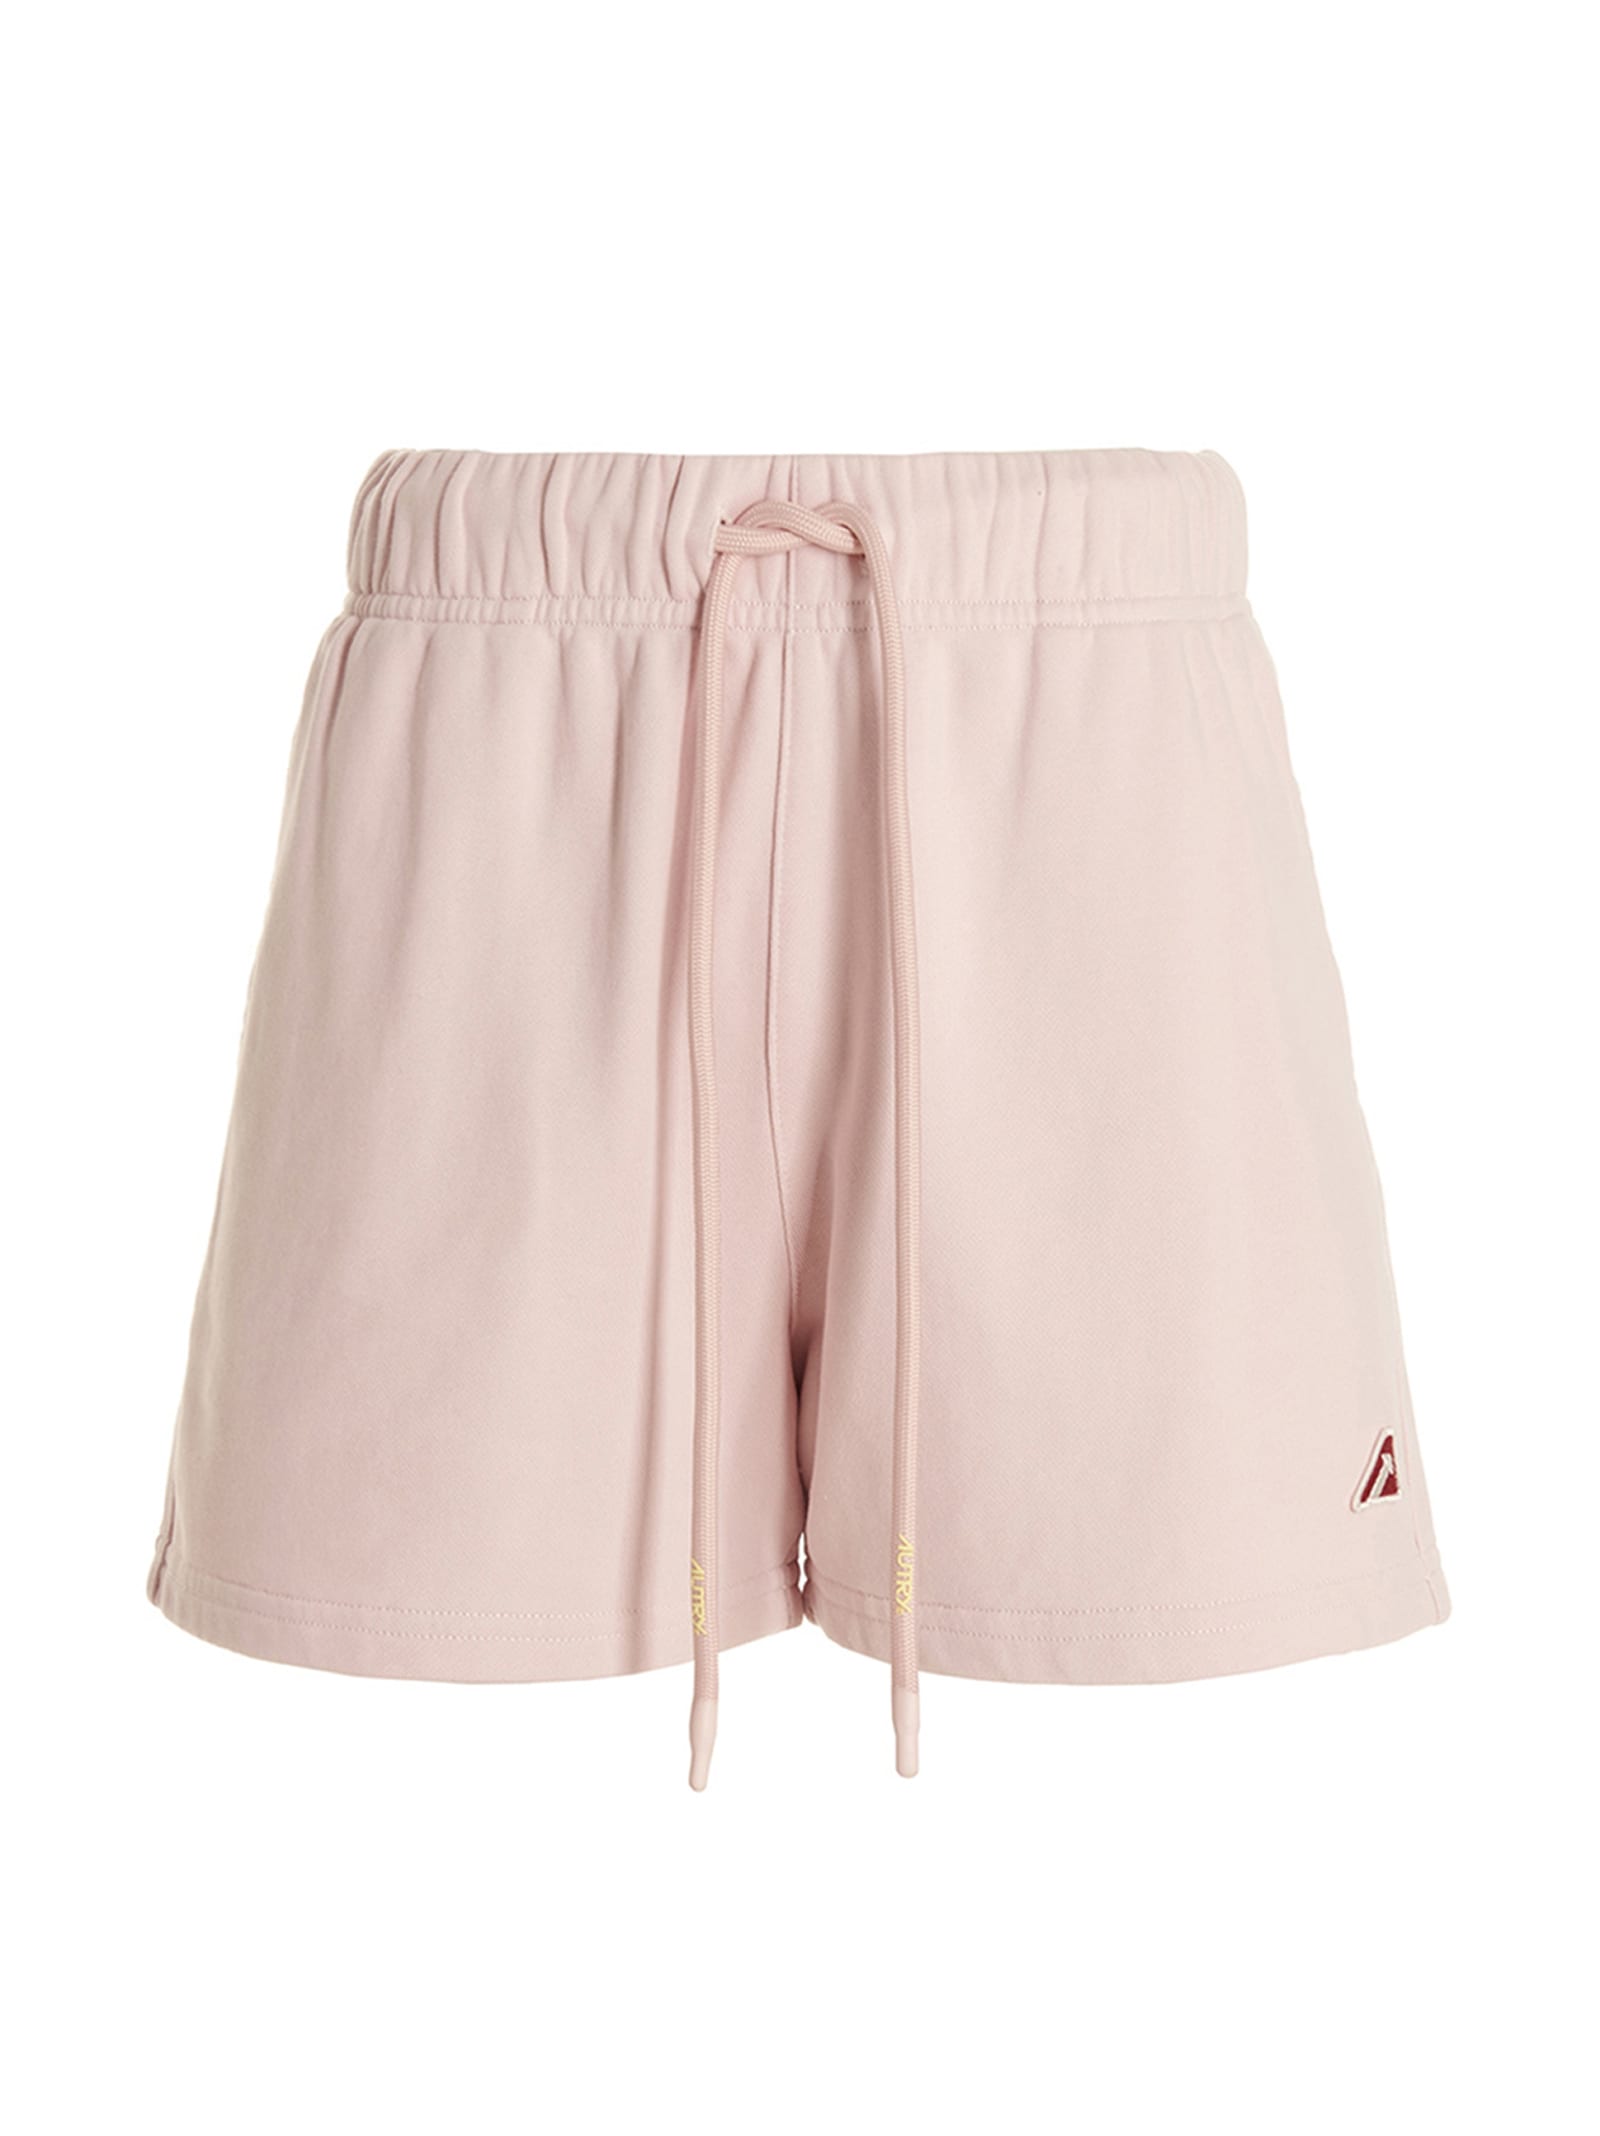 Shop Autry Tennis Shorts